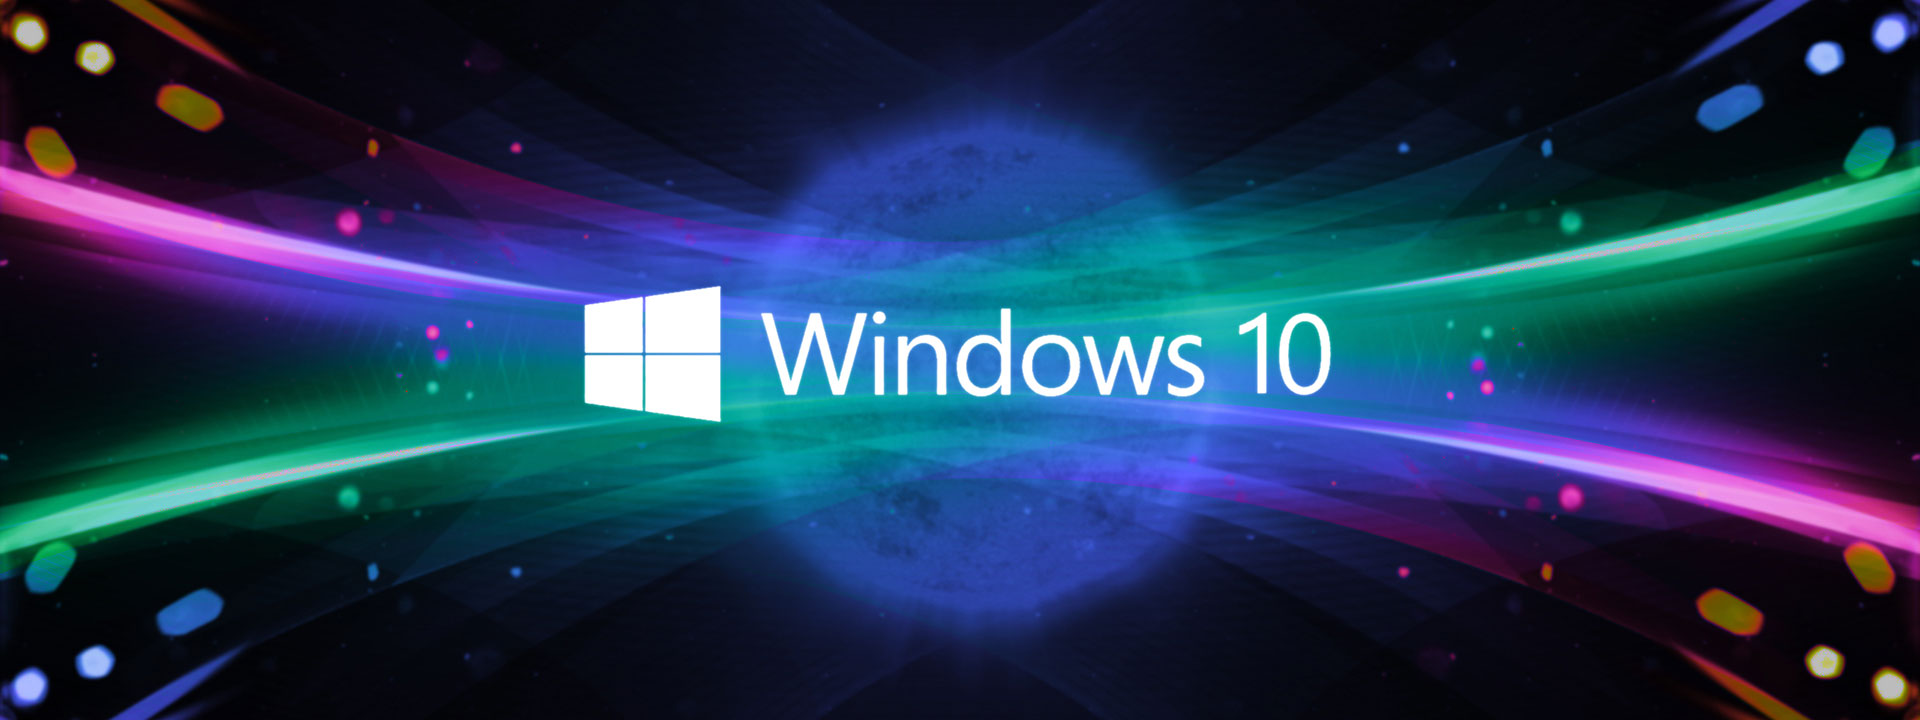 Cập nhật Windows 10: Nâng cấp phiên bản Windows của bạn lên Windows 10 để trải nghiệm trọn vẹn những tính năng mới nổi bật, đồng thời tăng tốc độ xử lý, bảo mật dữ liệu cũng như cải thiện khả năng kết nối với các thiết bị khác.